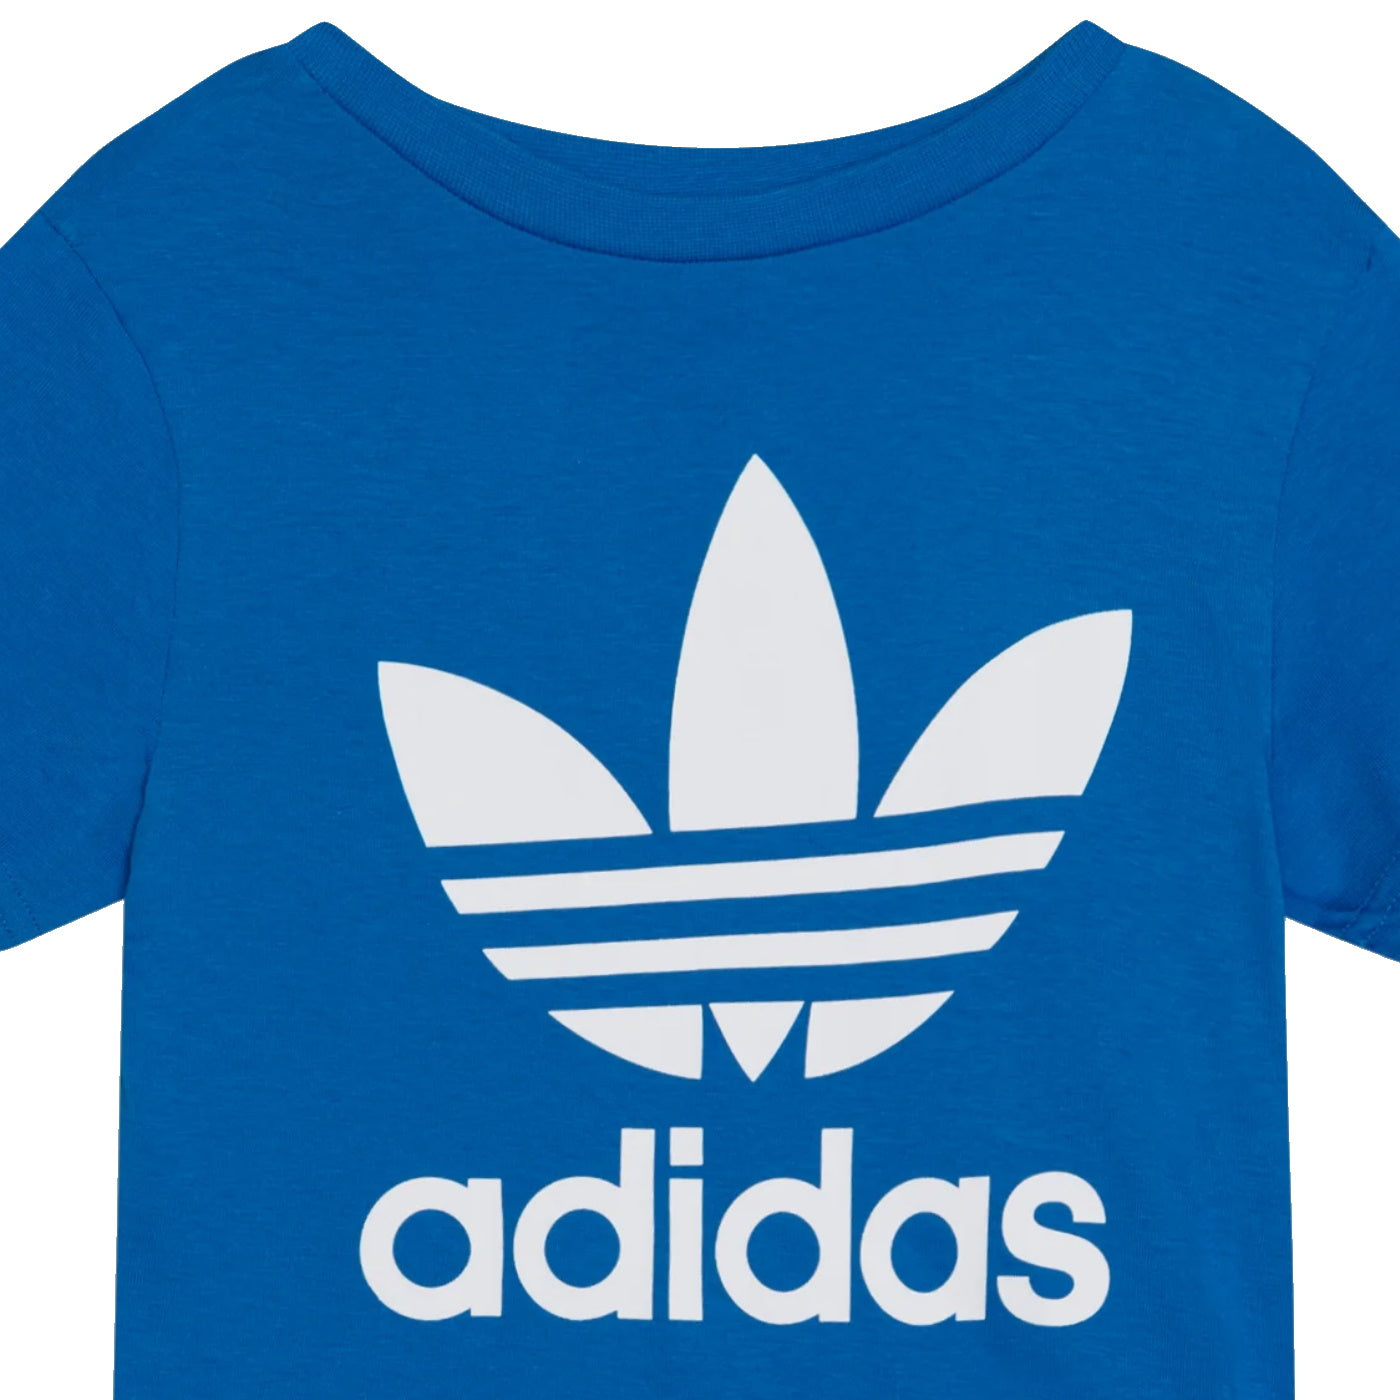 Adidas t-shirt teen unisex